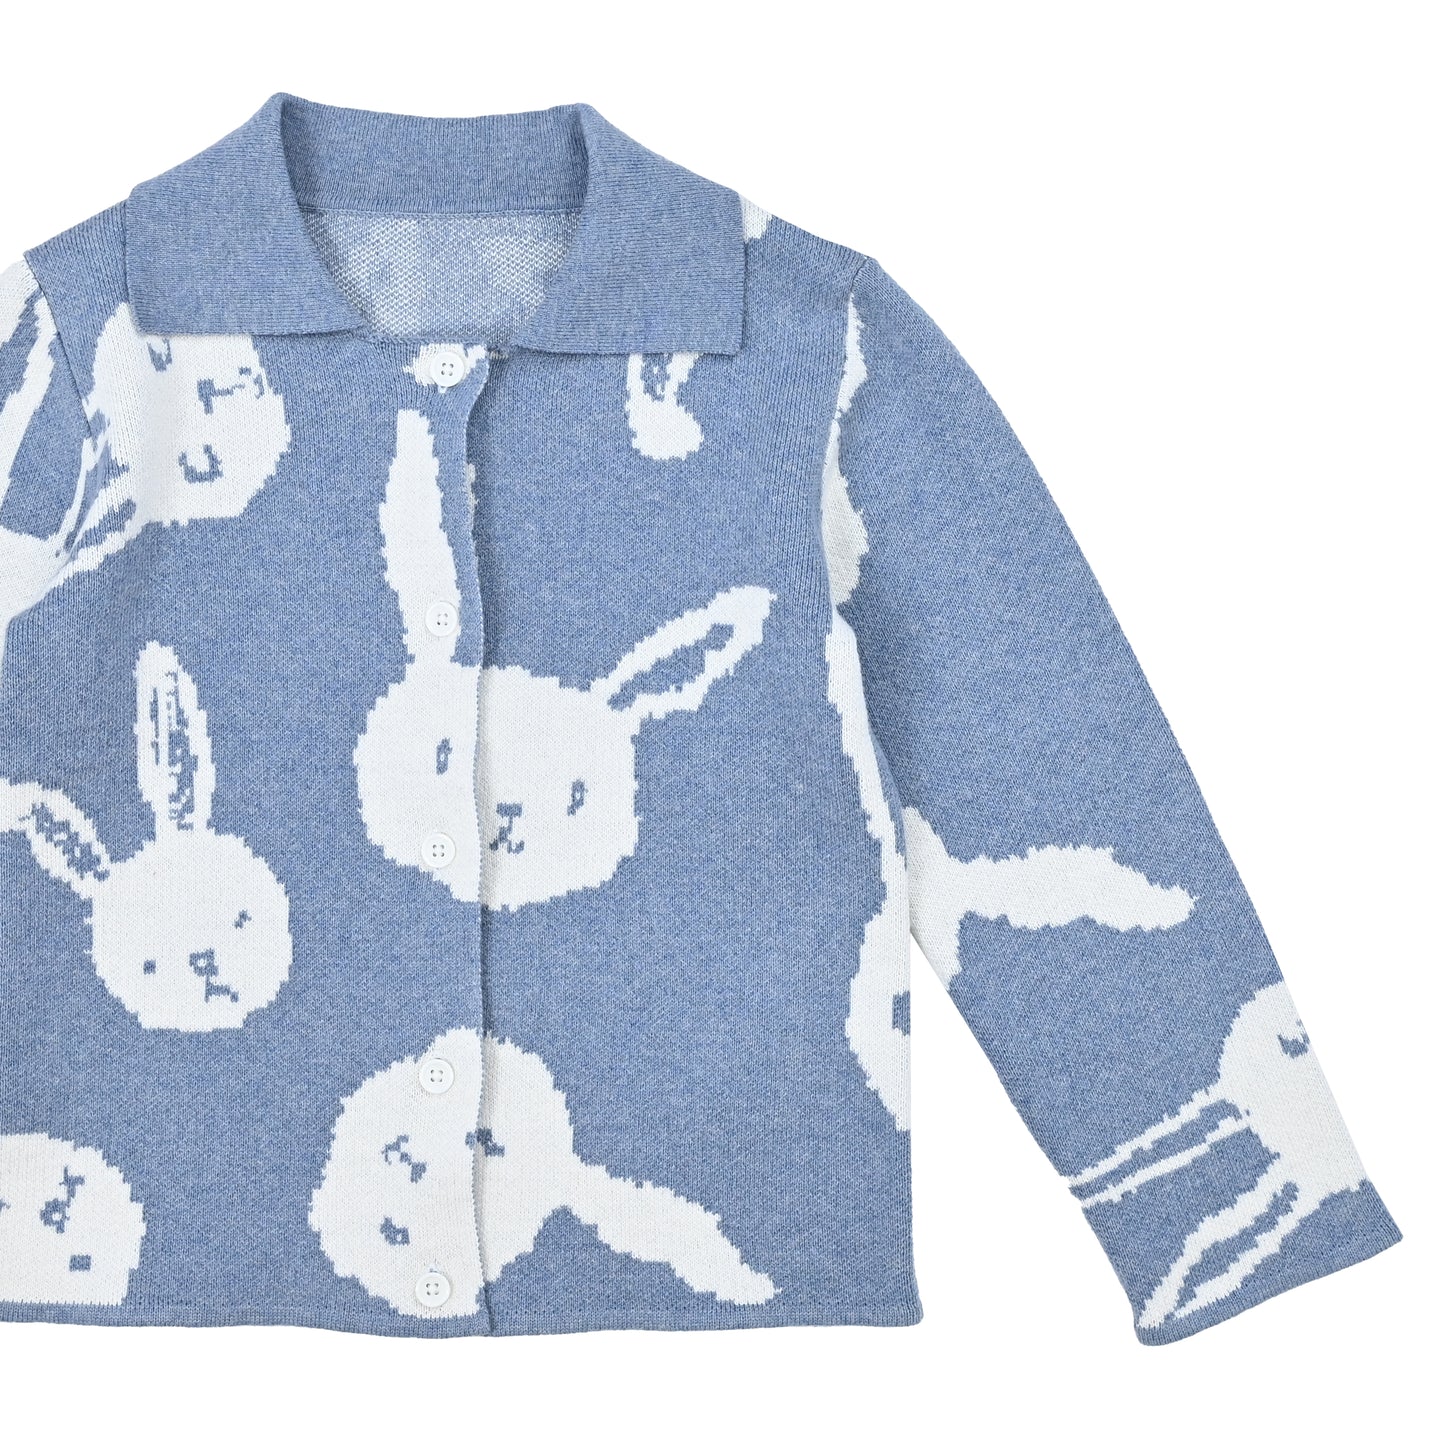 嬰兒服裝 - 嬰童粉藍色白兔圖案POLO領羊絨混棉長袖外套